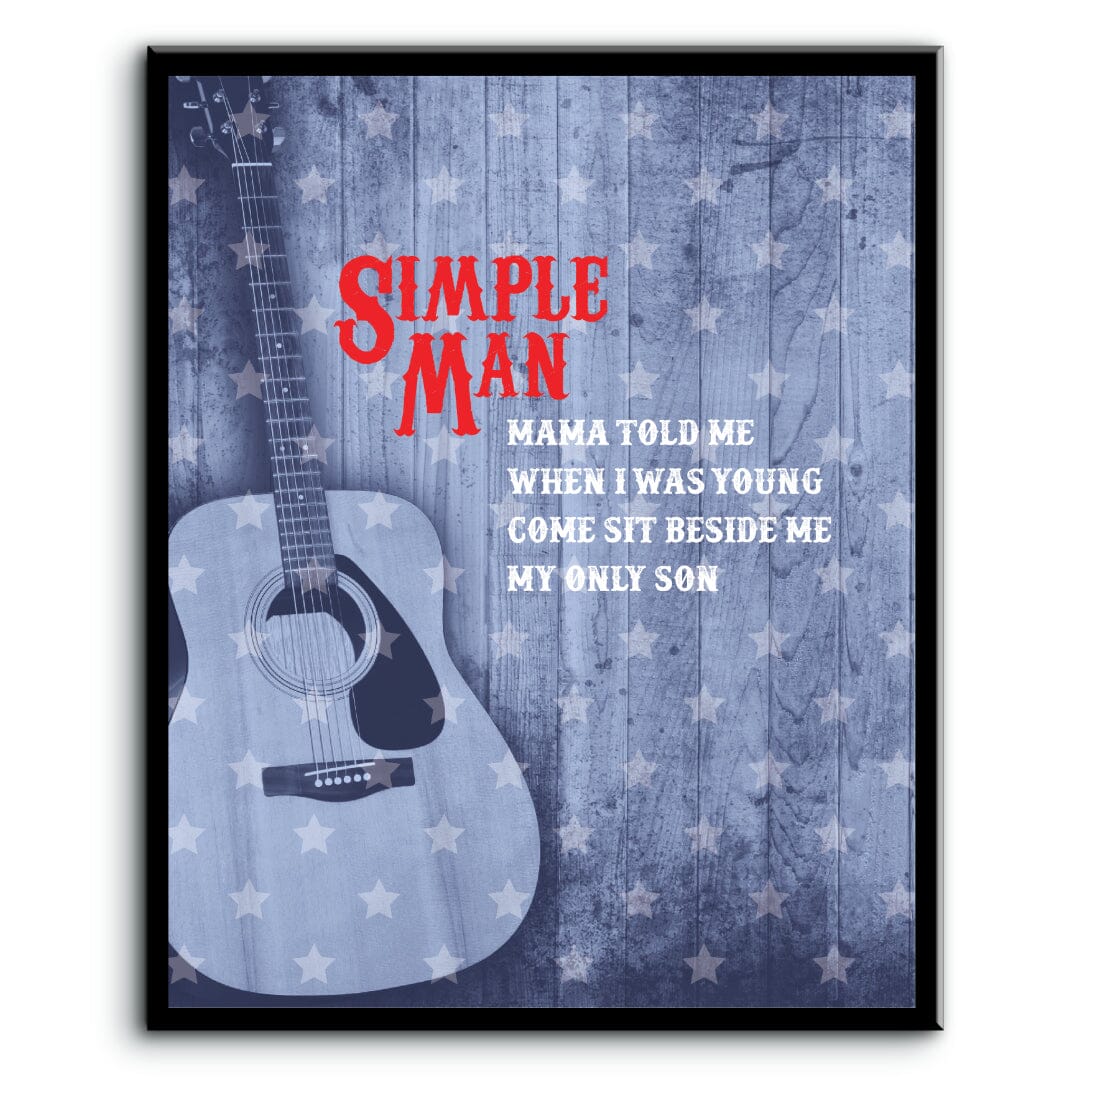 Simple Man by Lynyrd Skynyrd - Lyrical Graphic Song Print Song Lyrics Art Song Lyrics Art 8x10 Laminated Plaque 